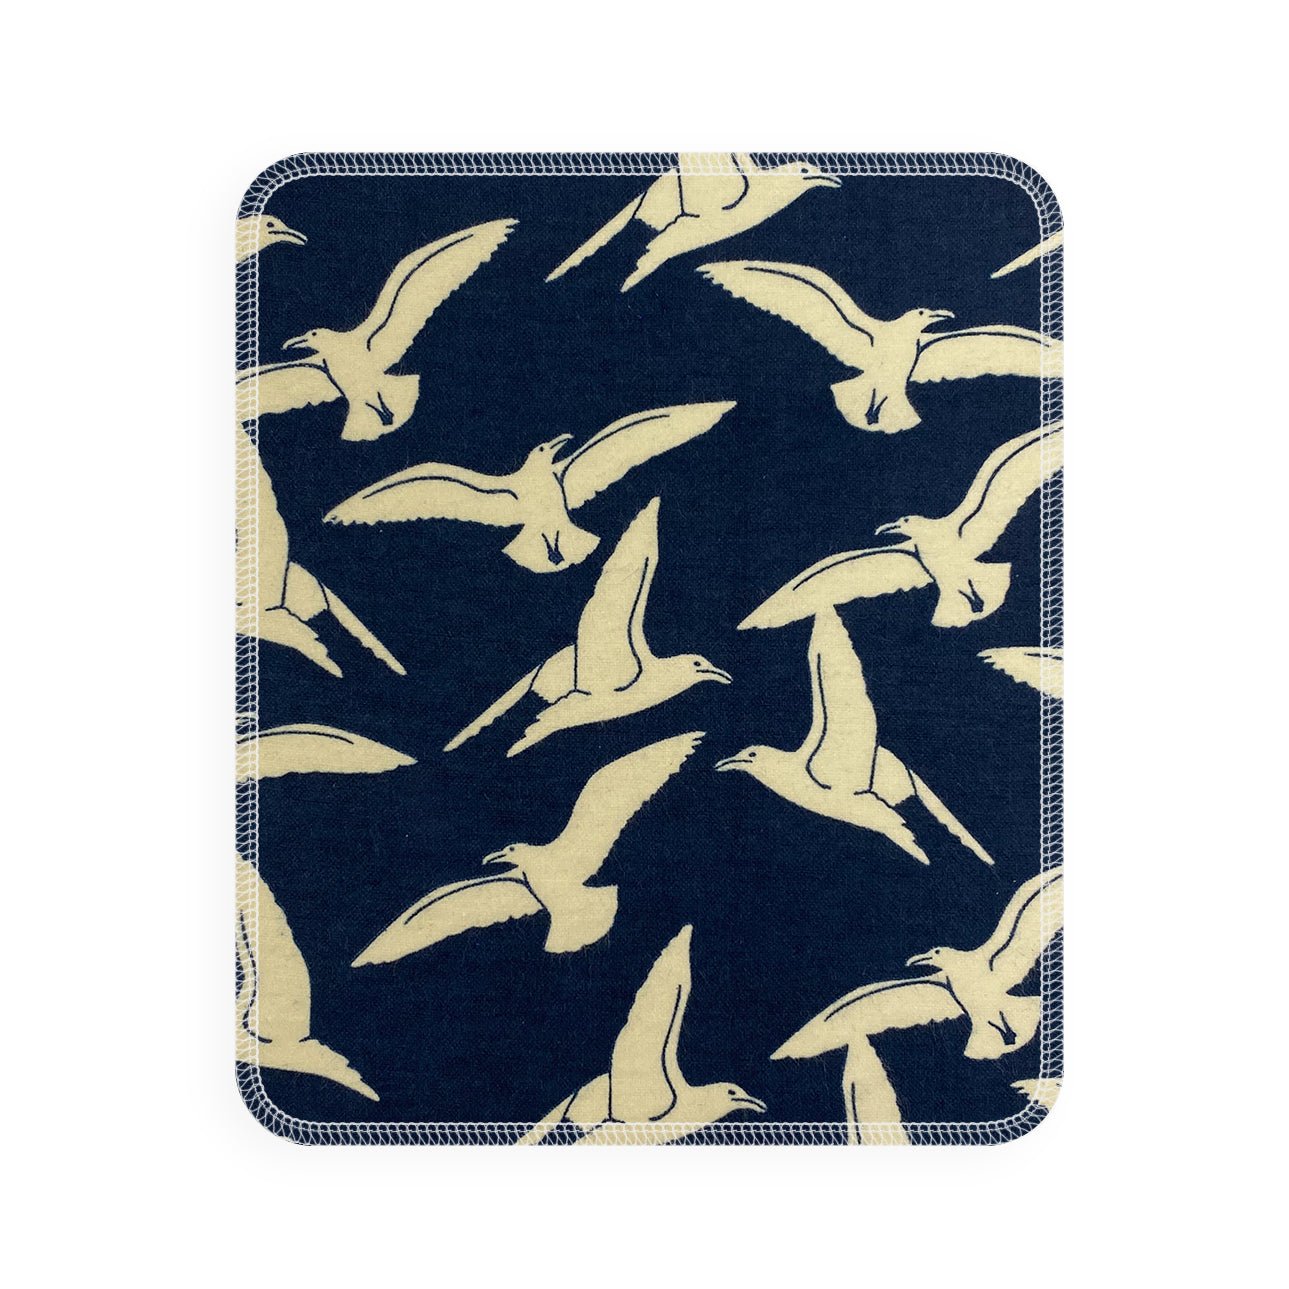 Marley's Monsters UNpaper® Towel Single: Navy Seagulls